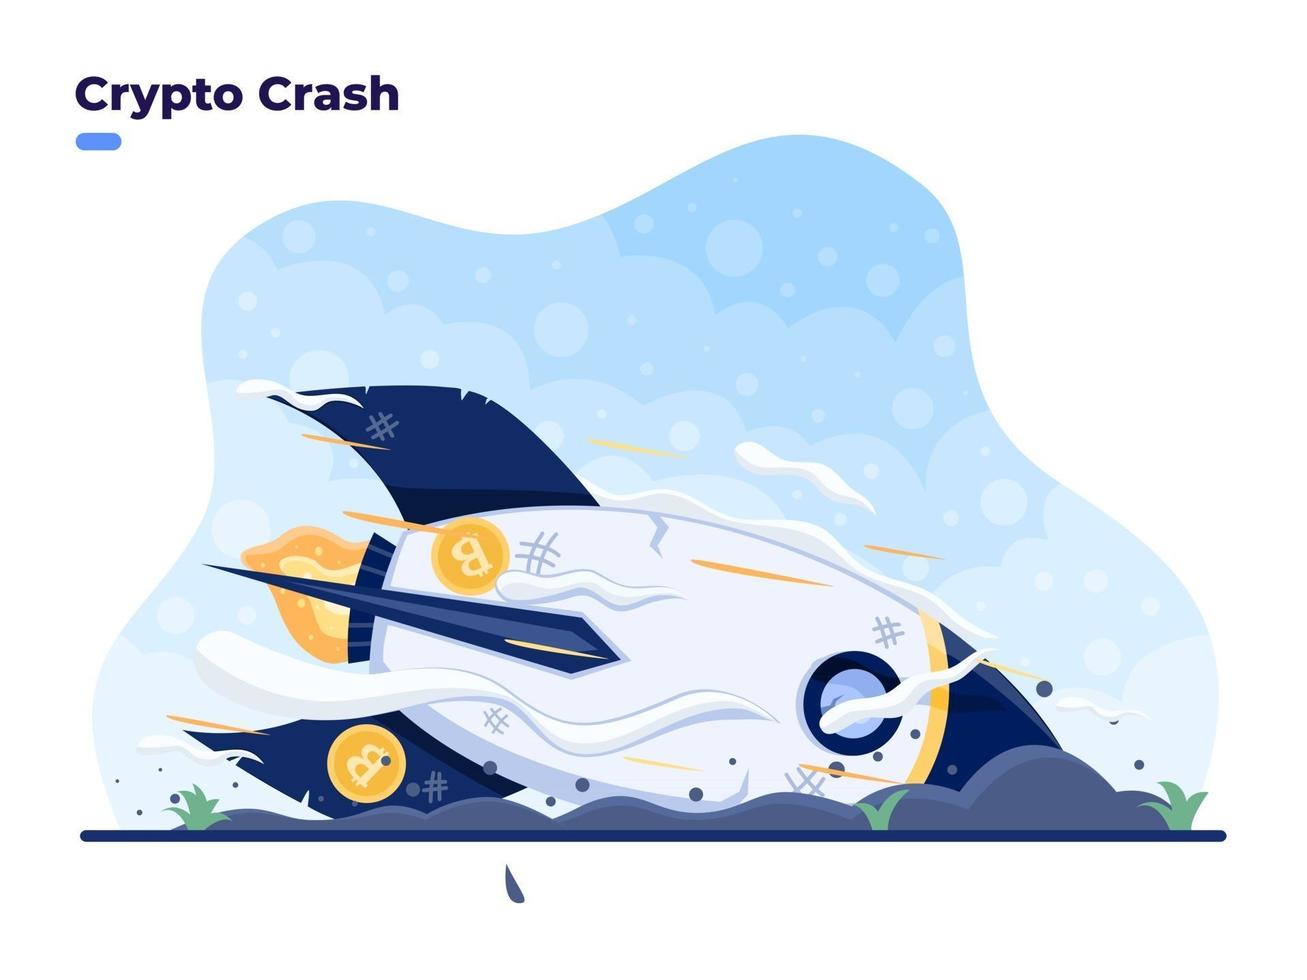 Krypto-Crash-Vektor-flaches Illustrationskonzept mit Bitcoin-Rakete, die auf den Boden stürzt. Absturz oder Abwertung des Bitcoin-Marktes. Preisverfall der Kryptowährung. großer Verlust bei Krypto-Investitionen. vektor